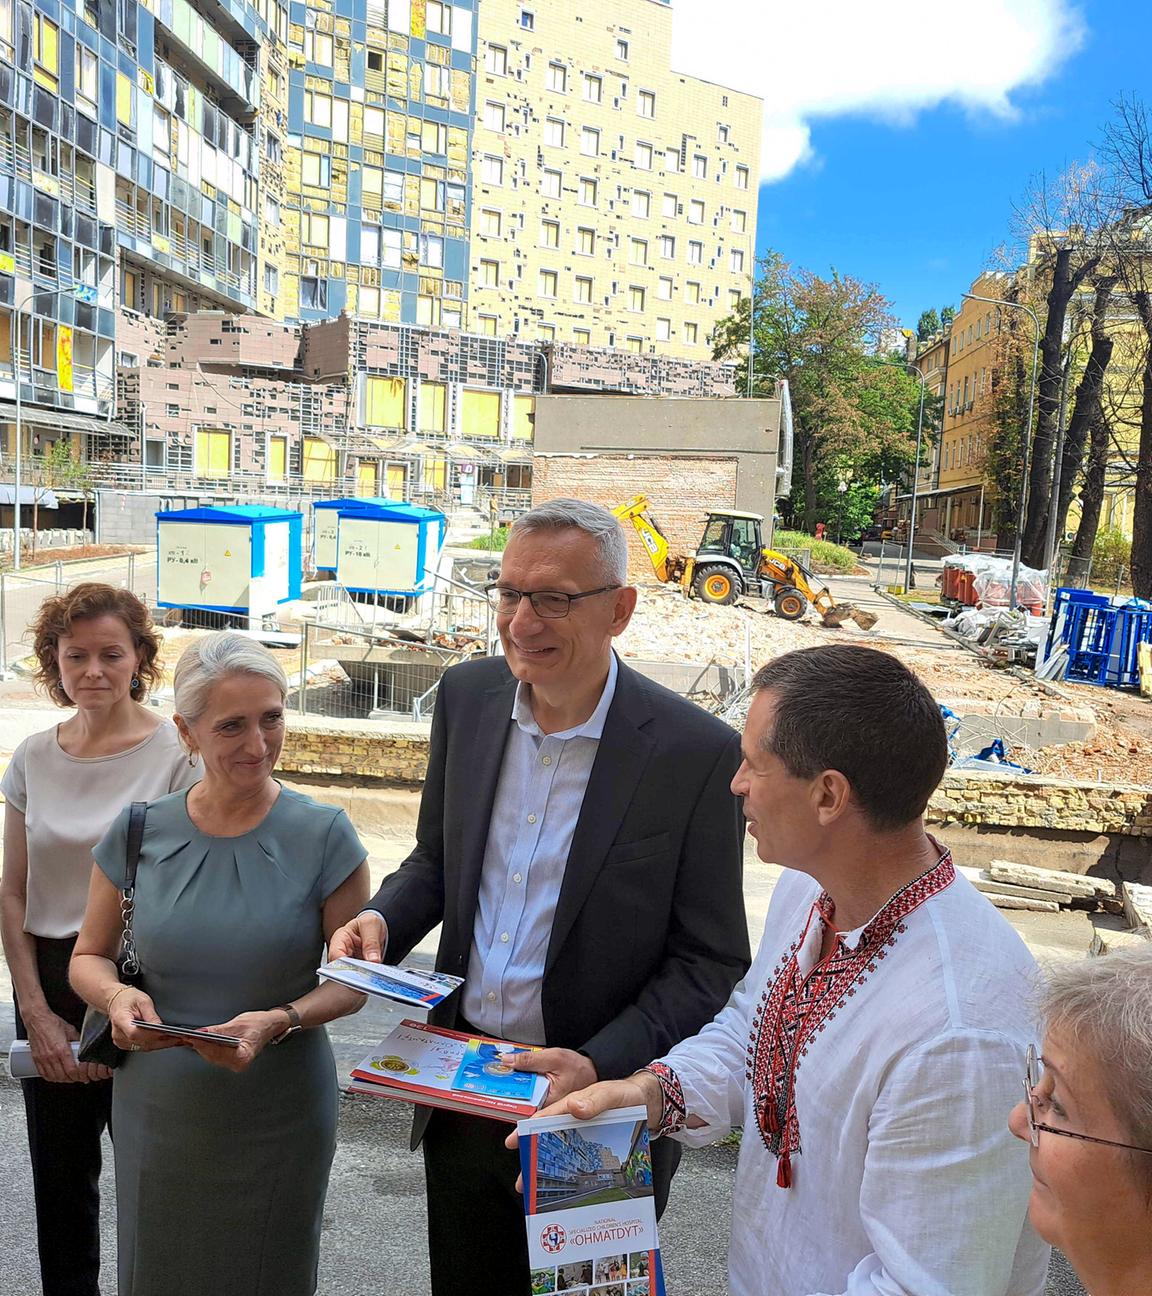 Der deutsche Botschafter Martin Jäger in Kiew vor dem zerstörten Kinderkrankenhaus